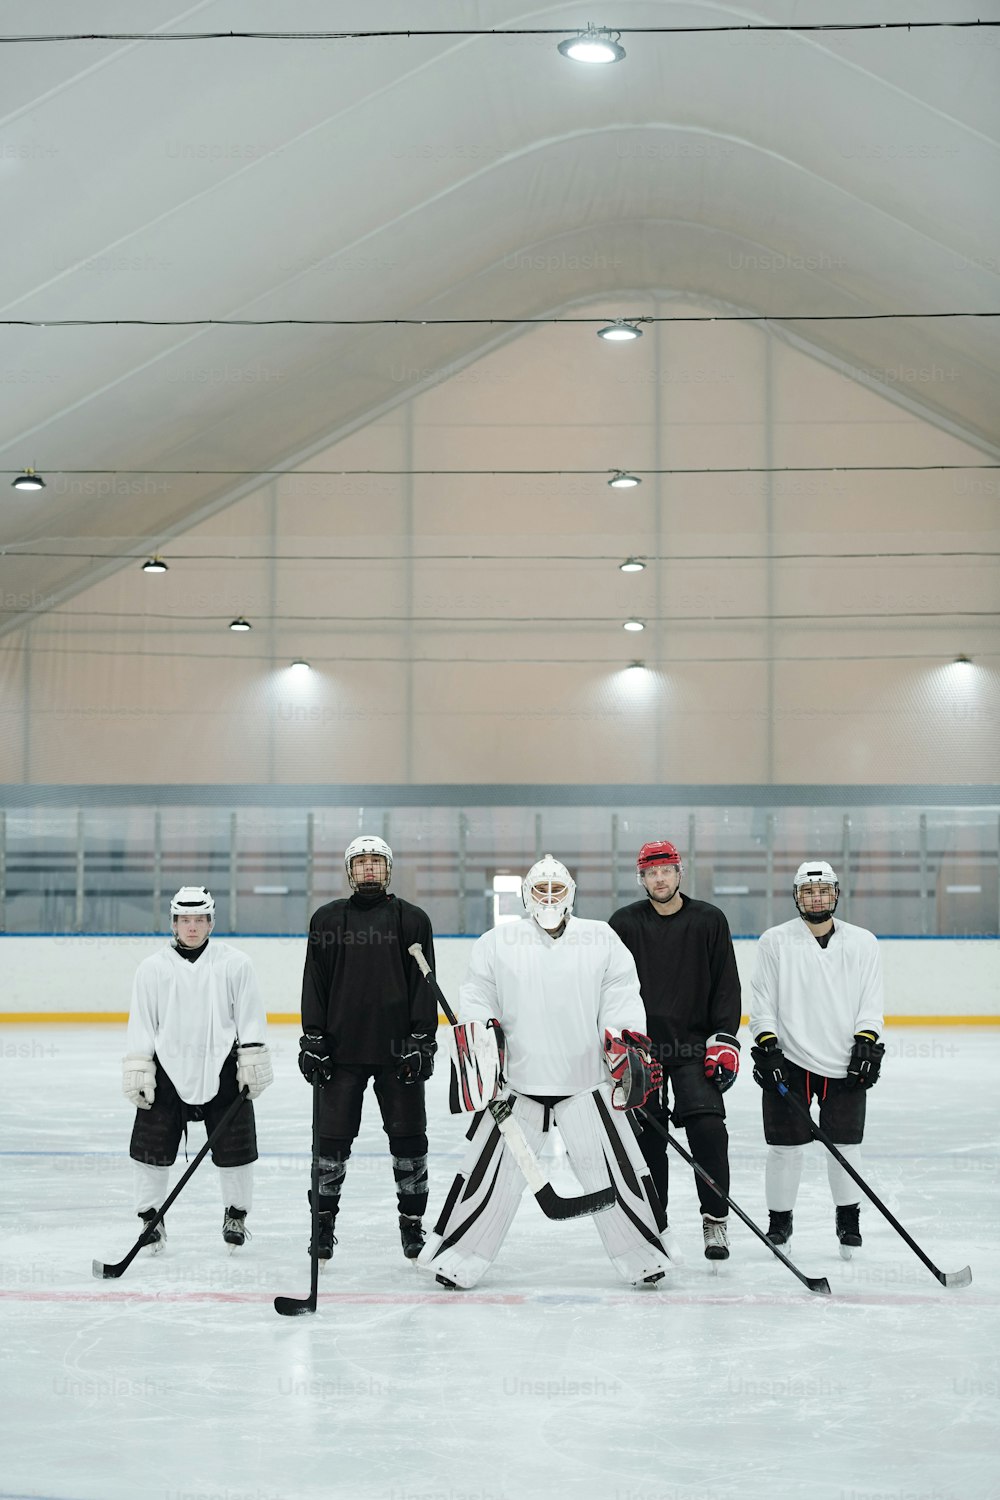 Grupo de jugadores de hockey y su entrenador en uniforme deportivo, guantes, patines y cascos protectores de pie en la pista de hielo mientras esperan el juego